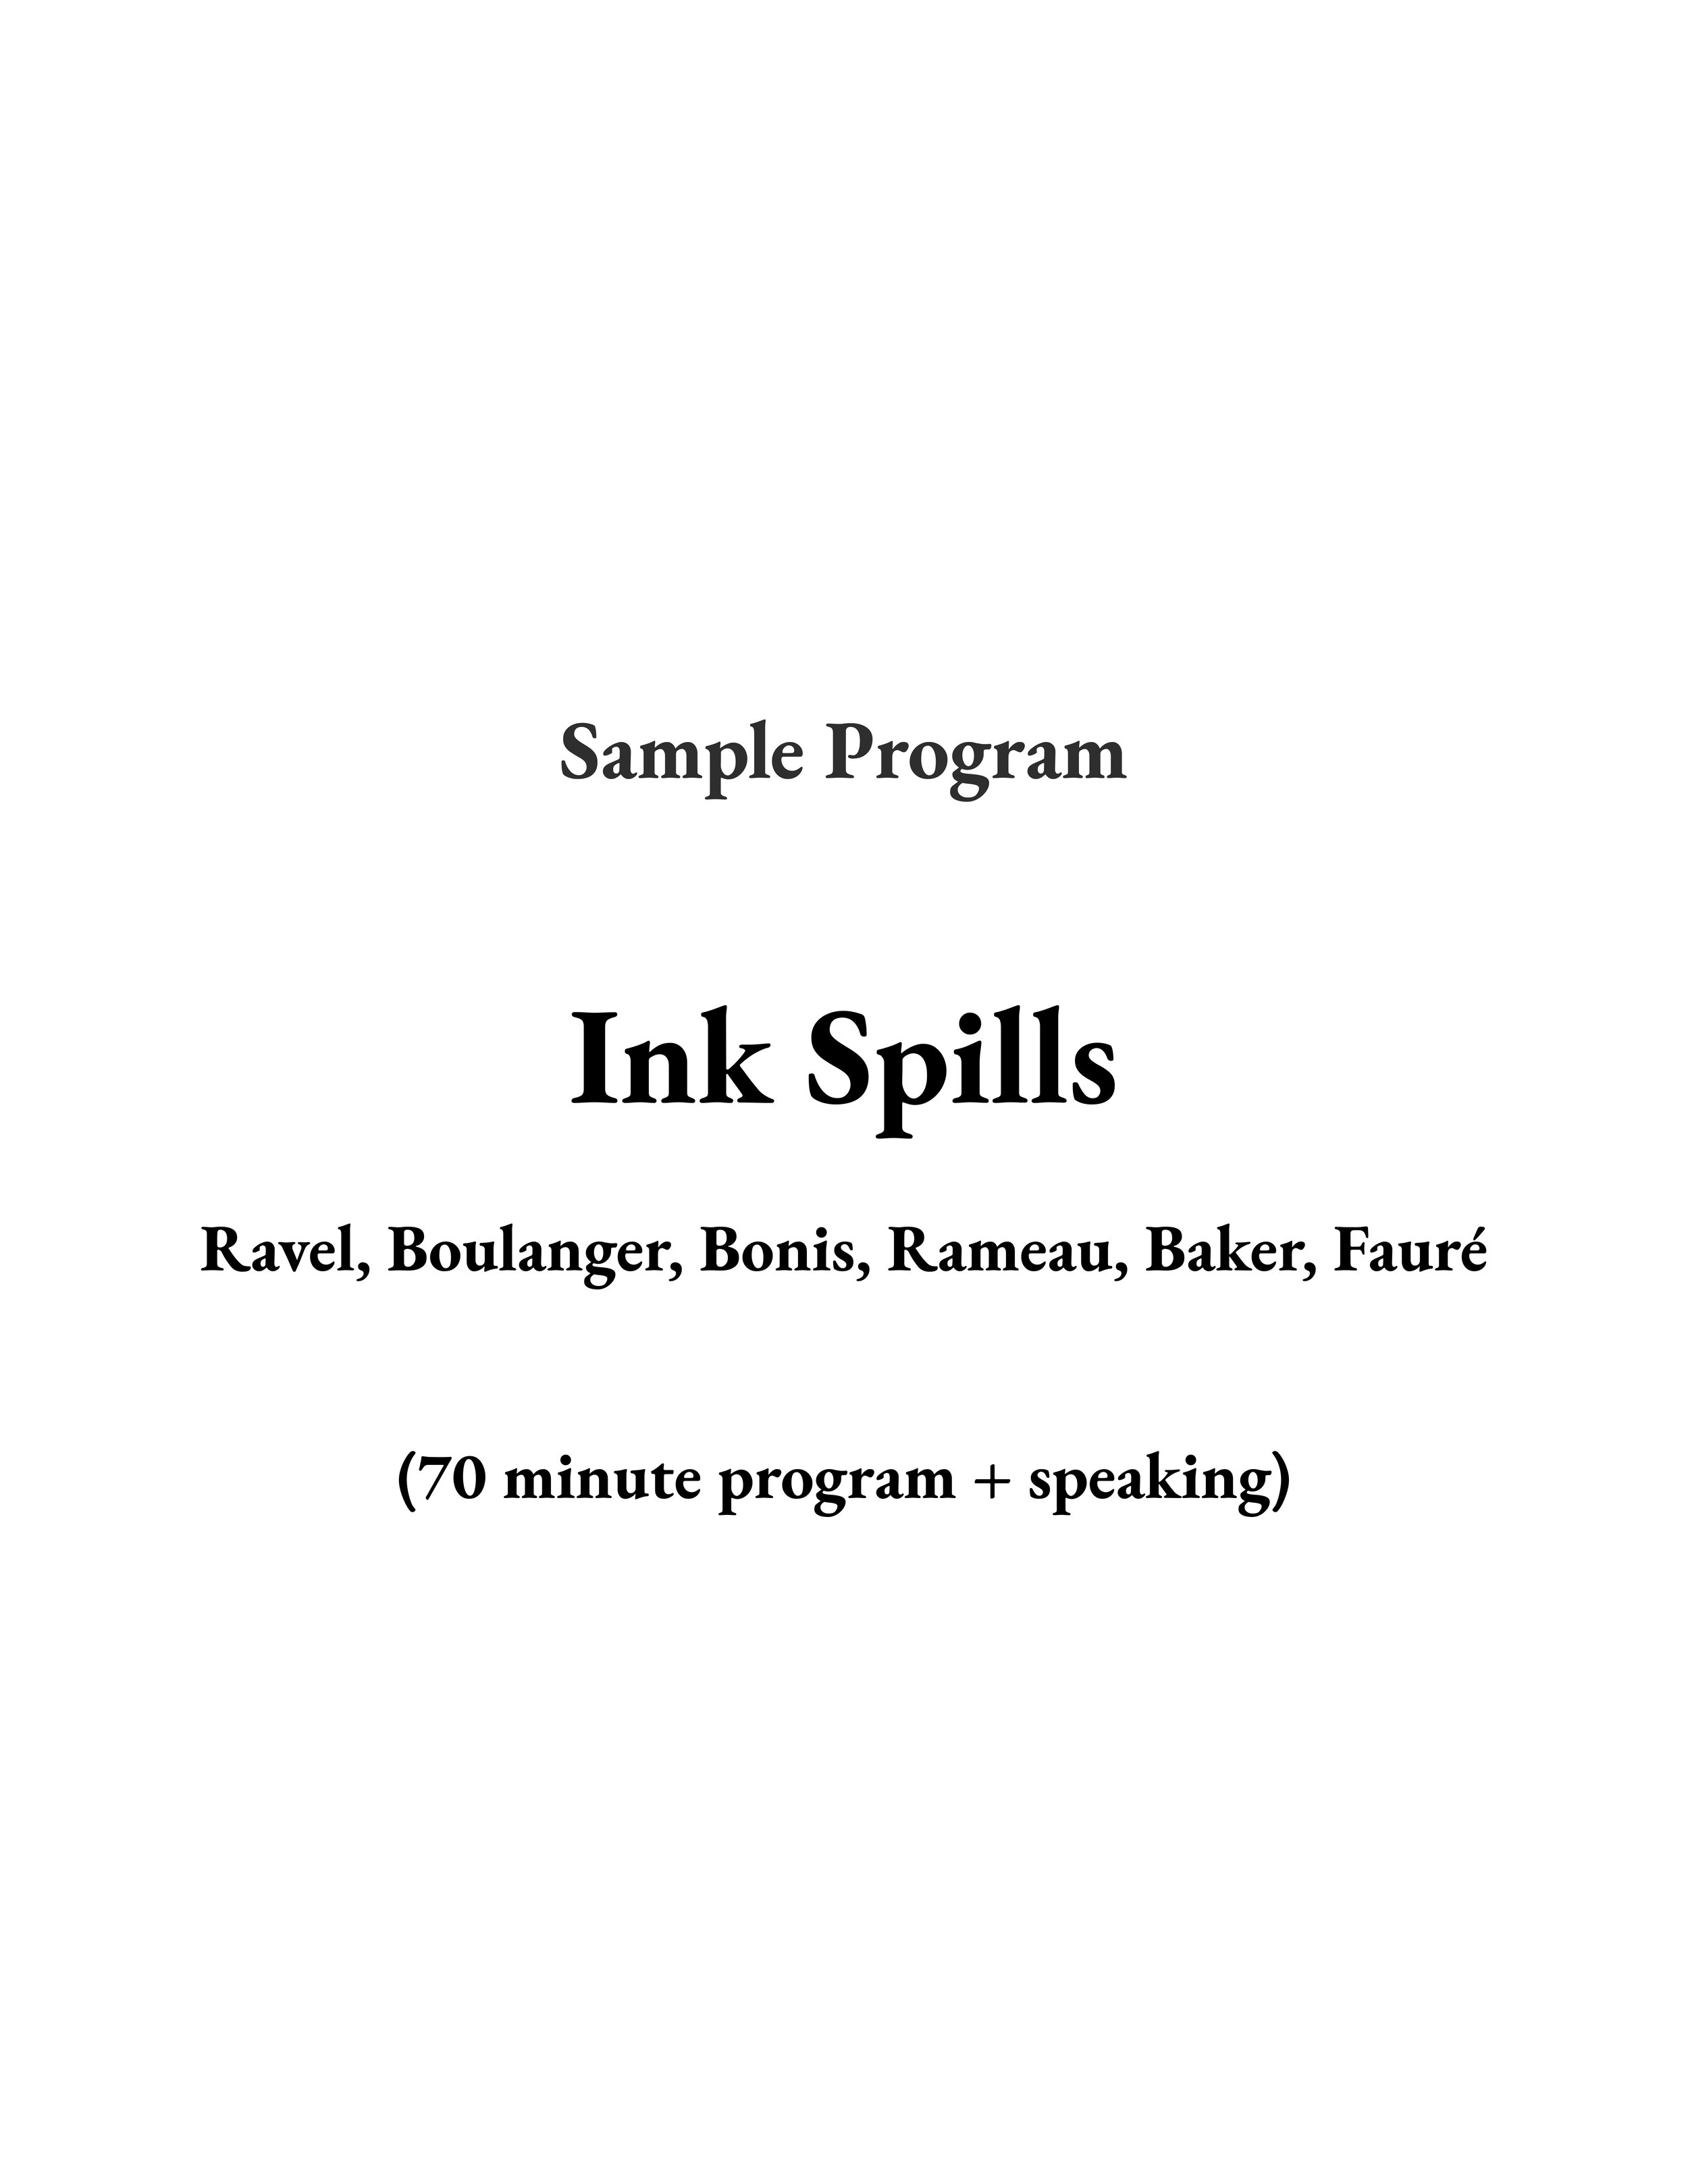 INK SPILLS front image.jpg